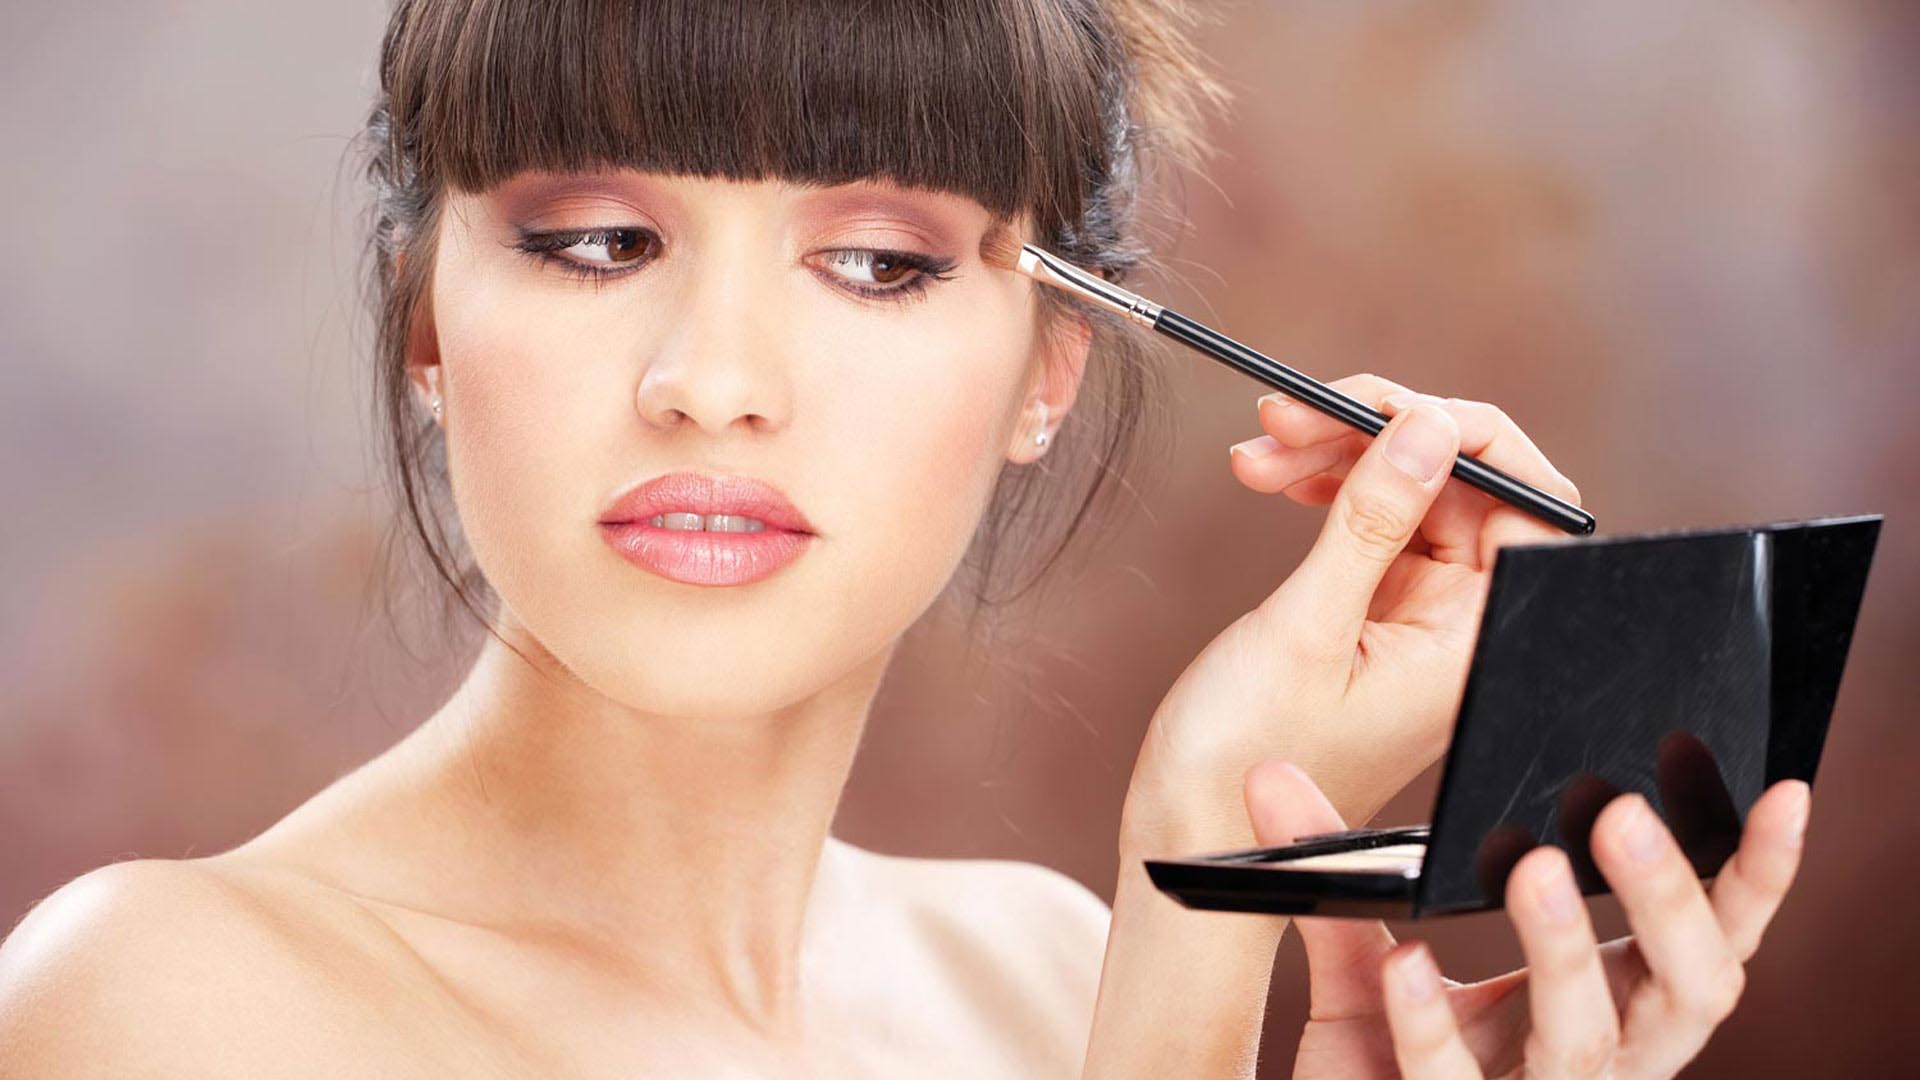 Lo que creemos que ahorramos comprando maquillaje económico podría costarnos más en tratamientos dermatológicos